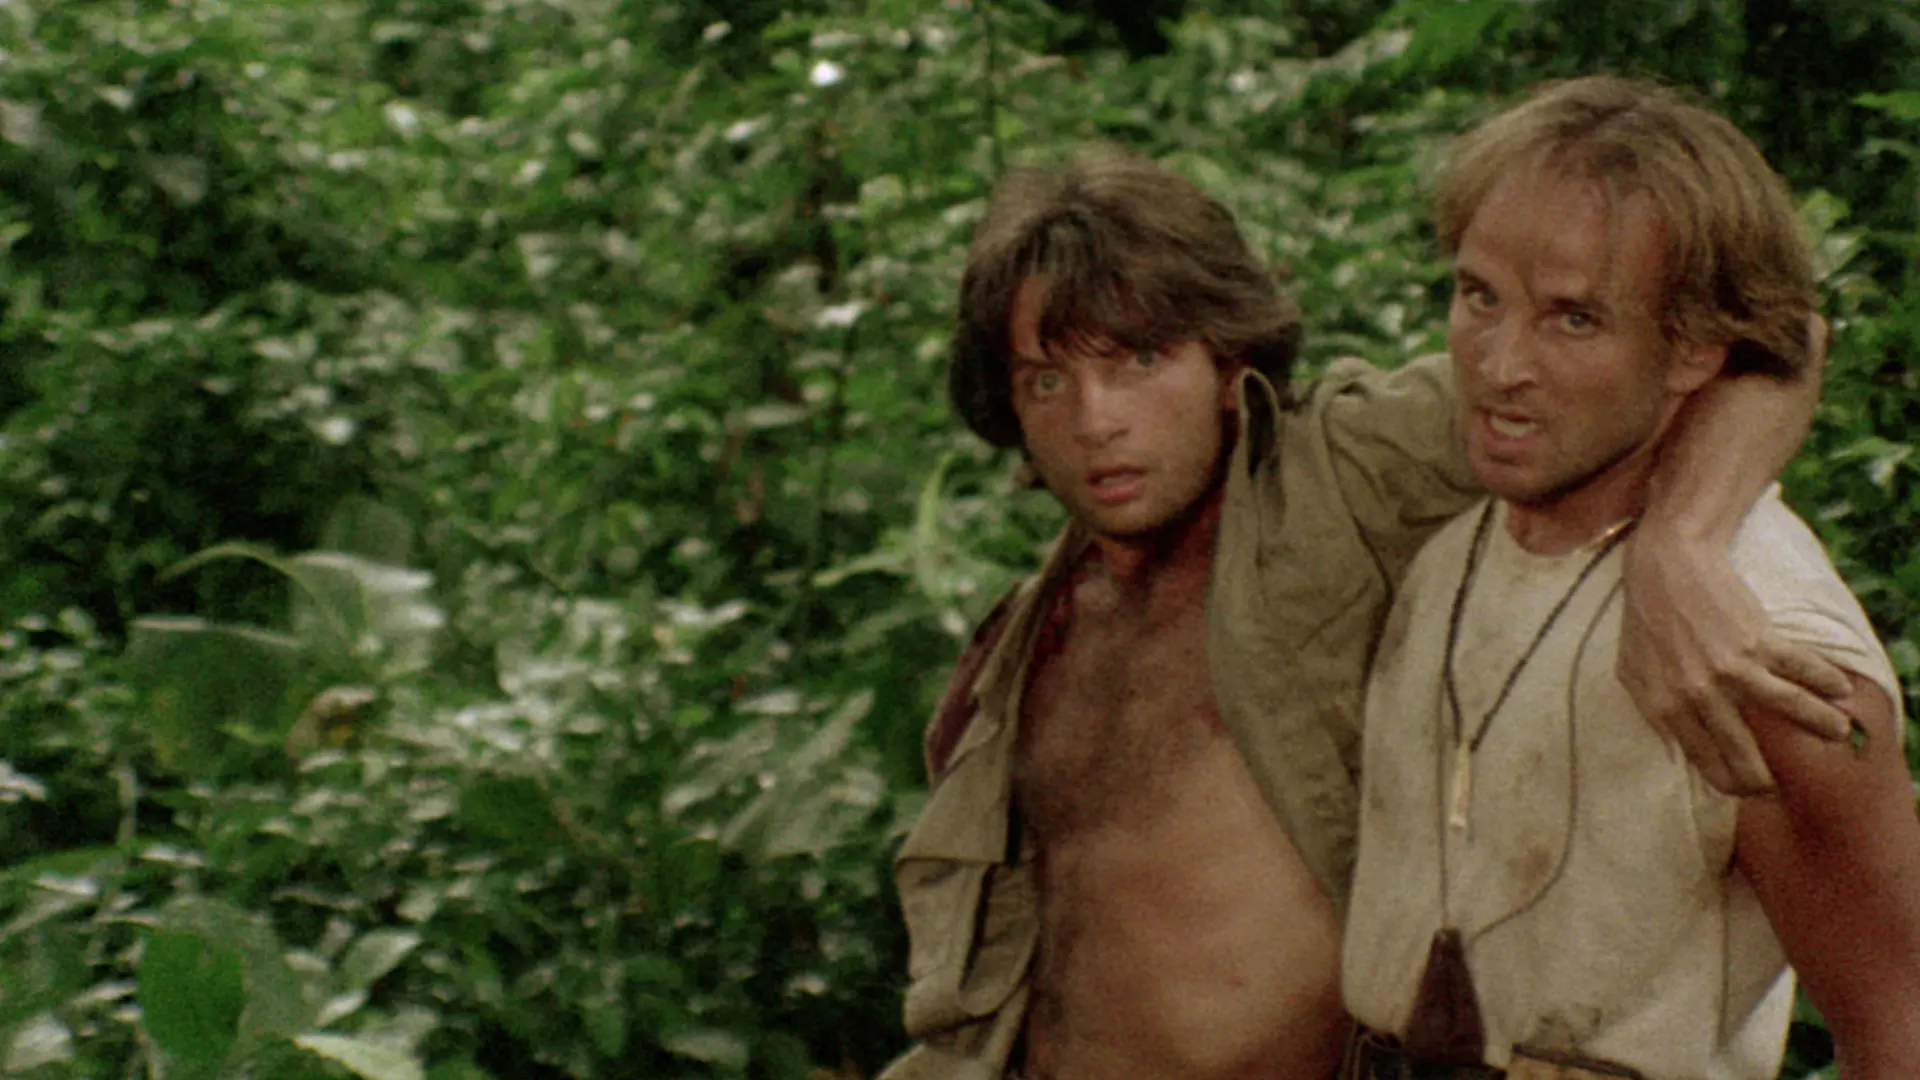 شخصیتهای والتر و جیووانی در جنگل در فیلم آدمخواری کانیبال فراکس